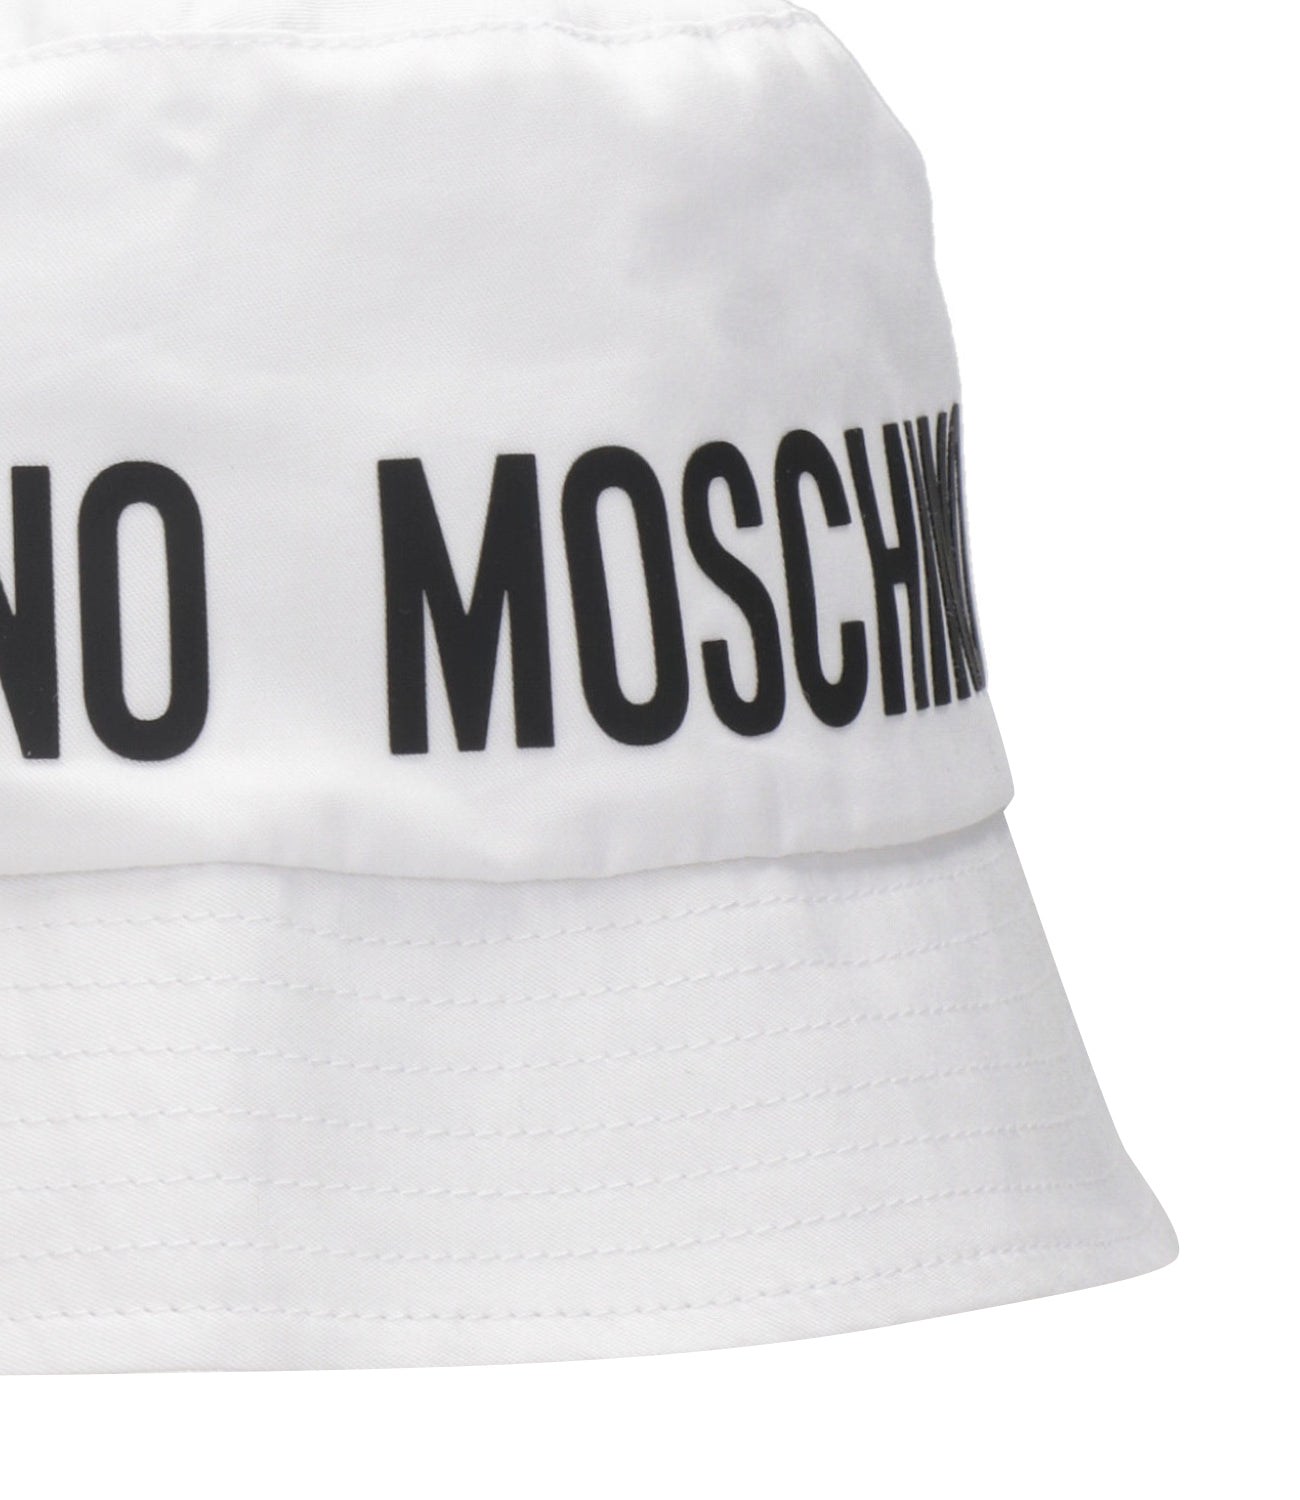 Moschino Kids | Hat Optical White